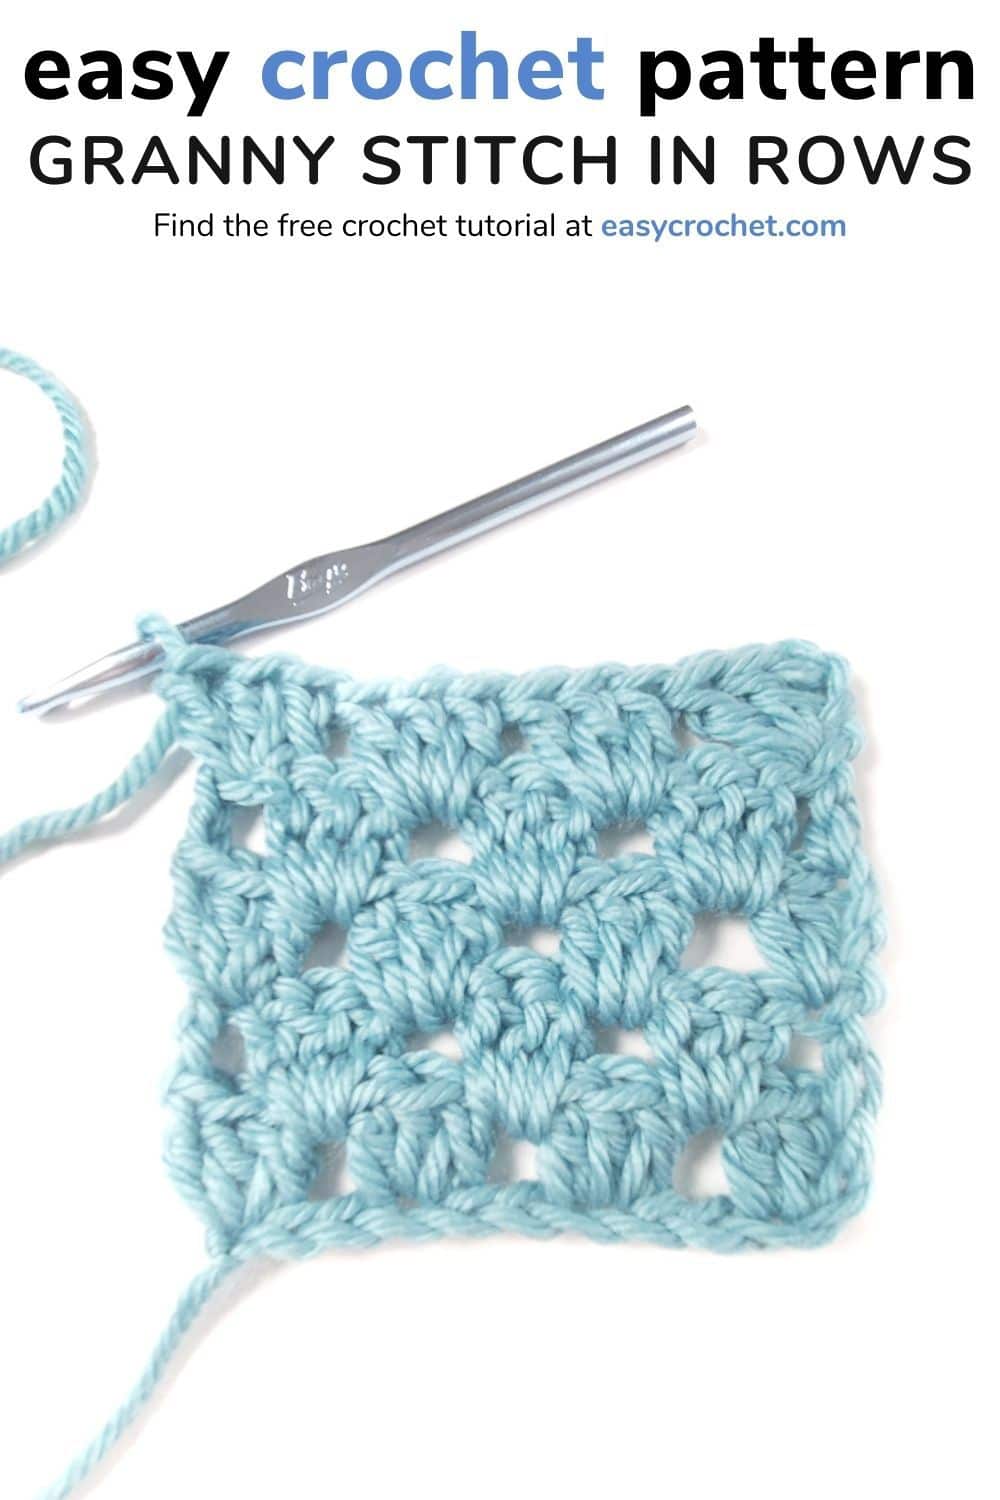 crochet granny stitch in rows